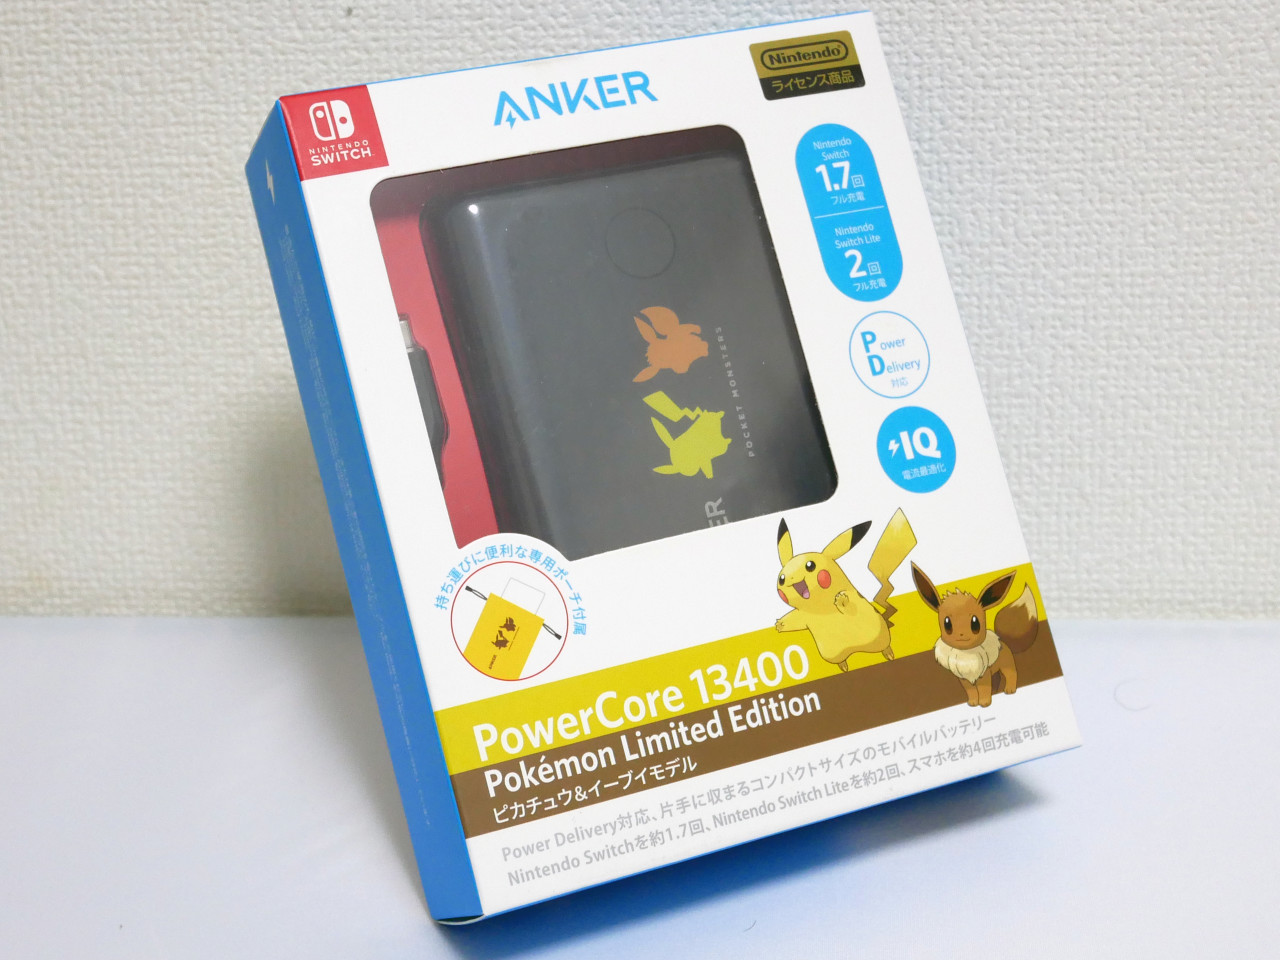 大人気】ポケモン好き必携の「Anker PowerCore 13400 Pokemon Limited 